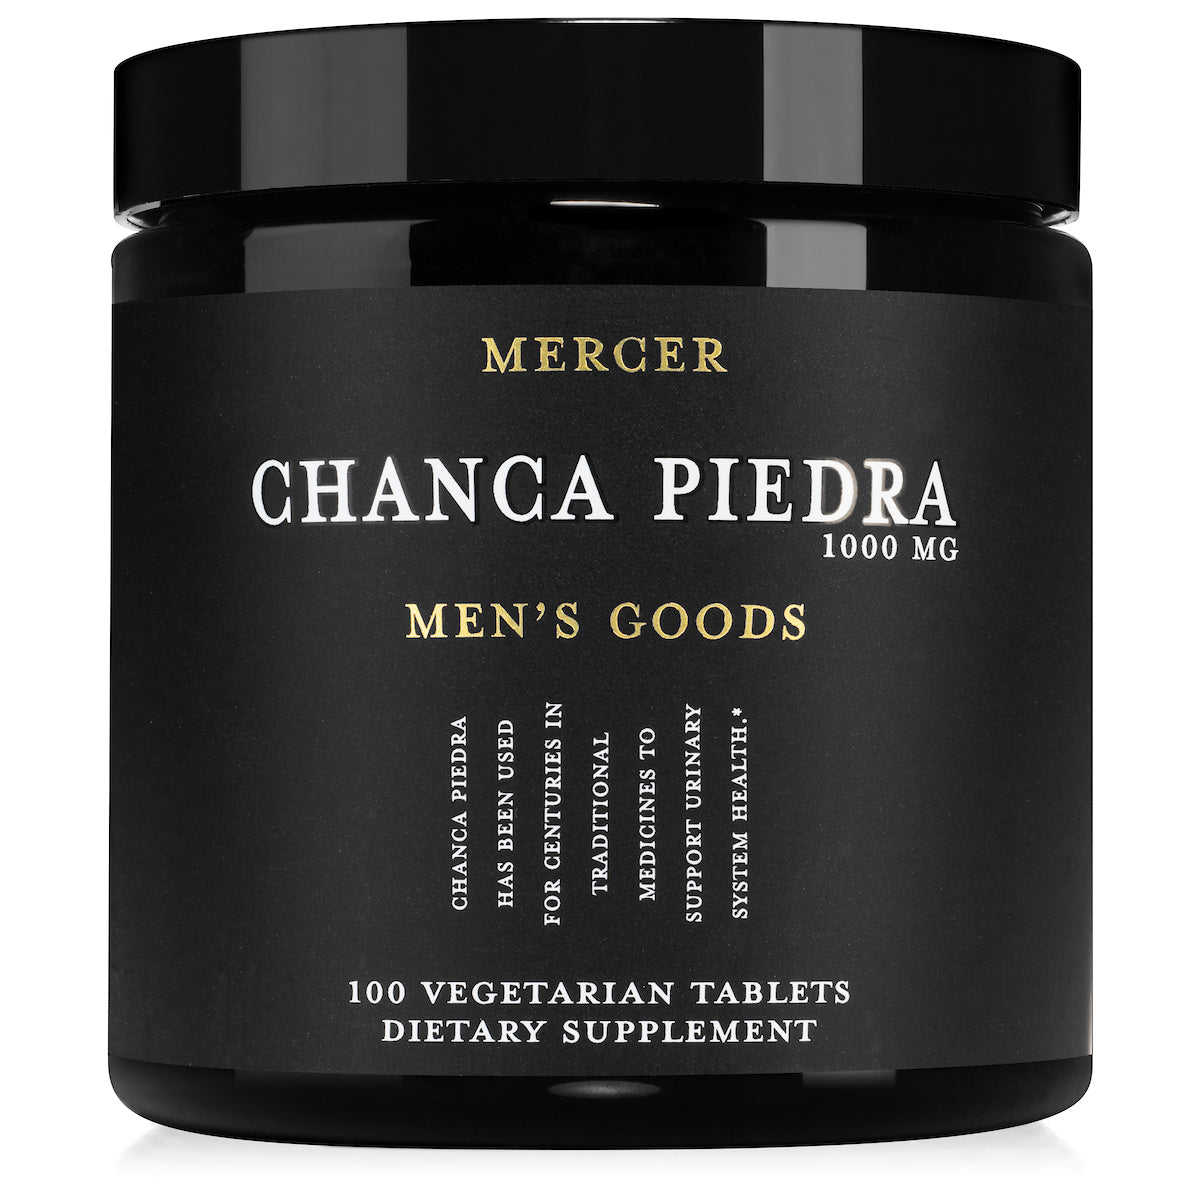 Mercer Chanca Piedra 1000 mg